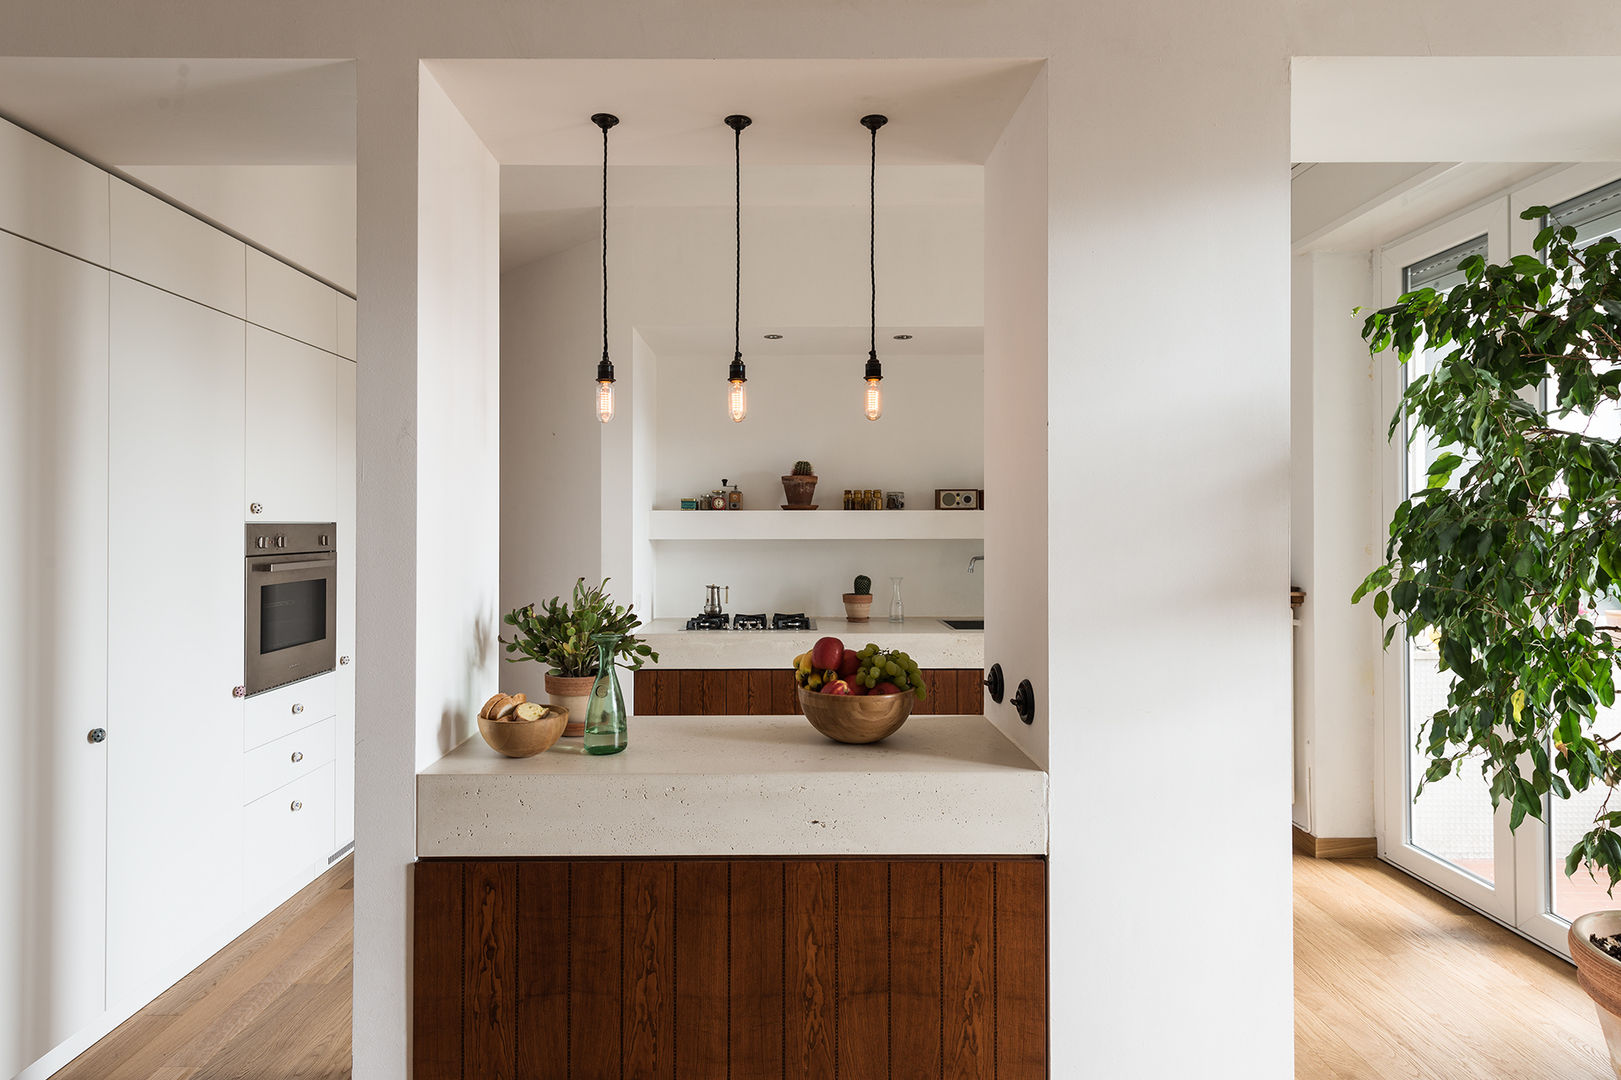 Woodboard House: Wohnungsrenovierung mit Charme, Atelier Blank Atelier Blank Comedores de estilo minimalista